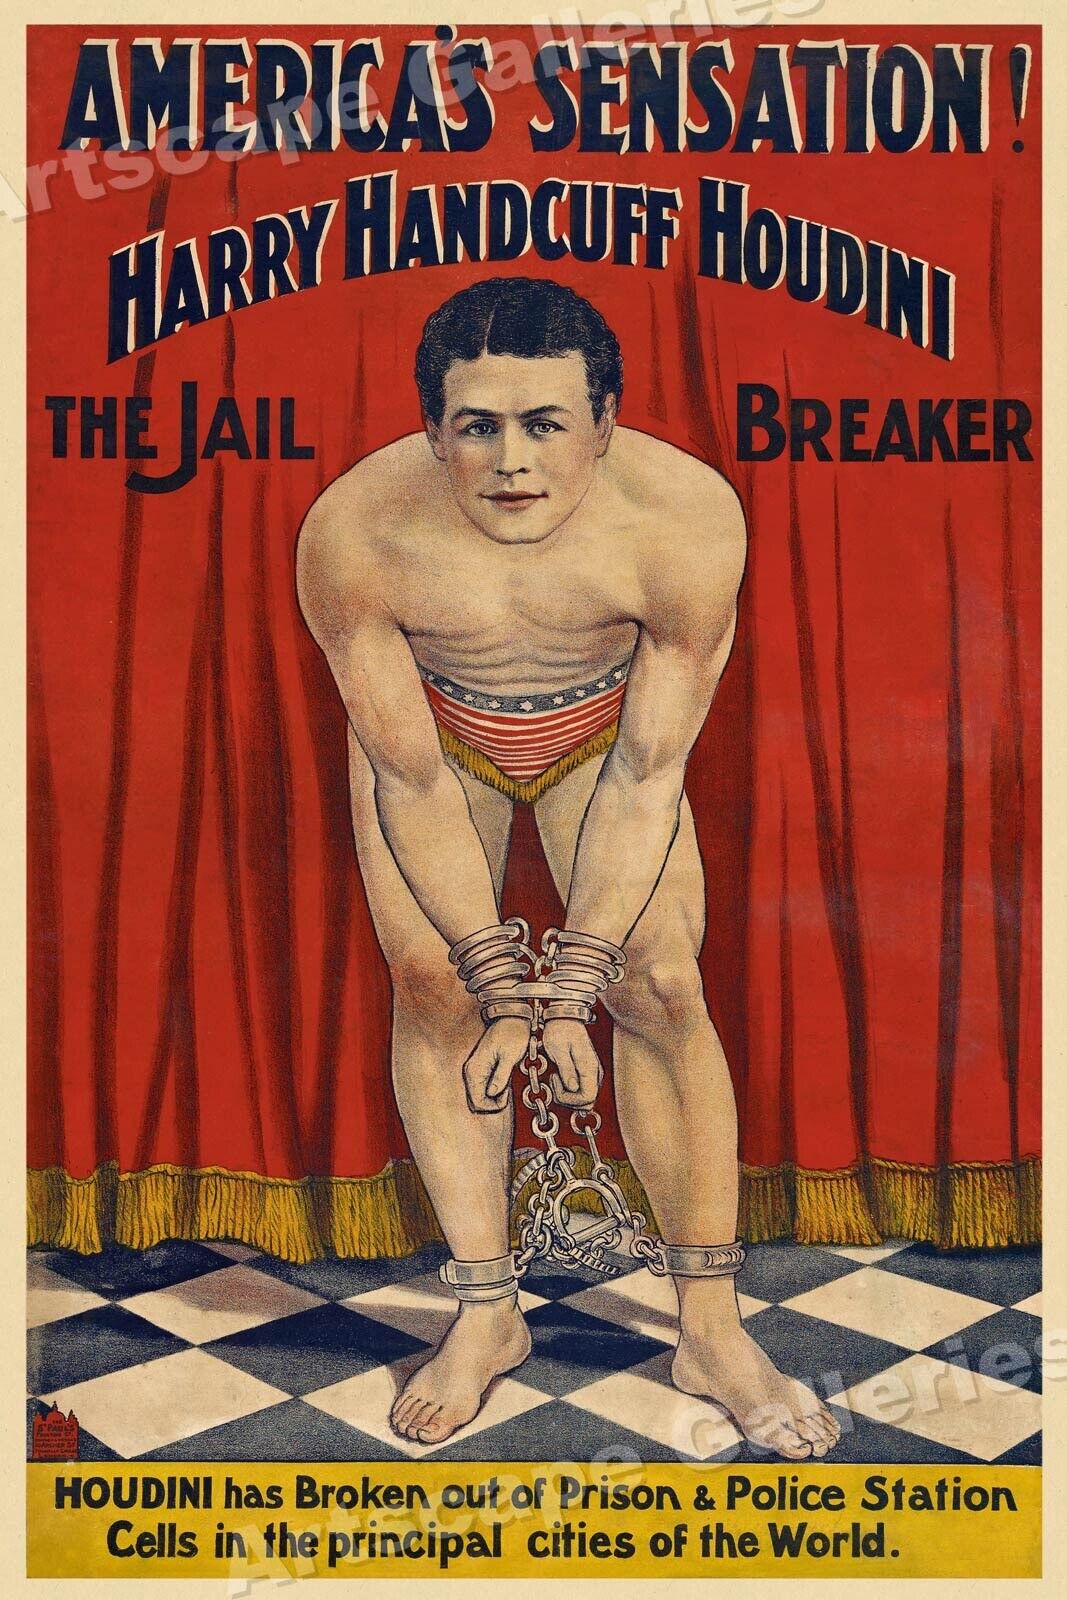 Harry Handcuff Houdini 1900s Vintage Style Escape MagicPoster - 24x36